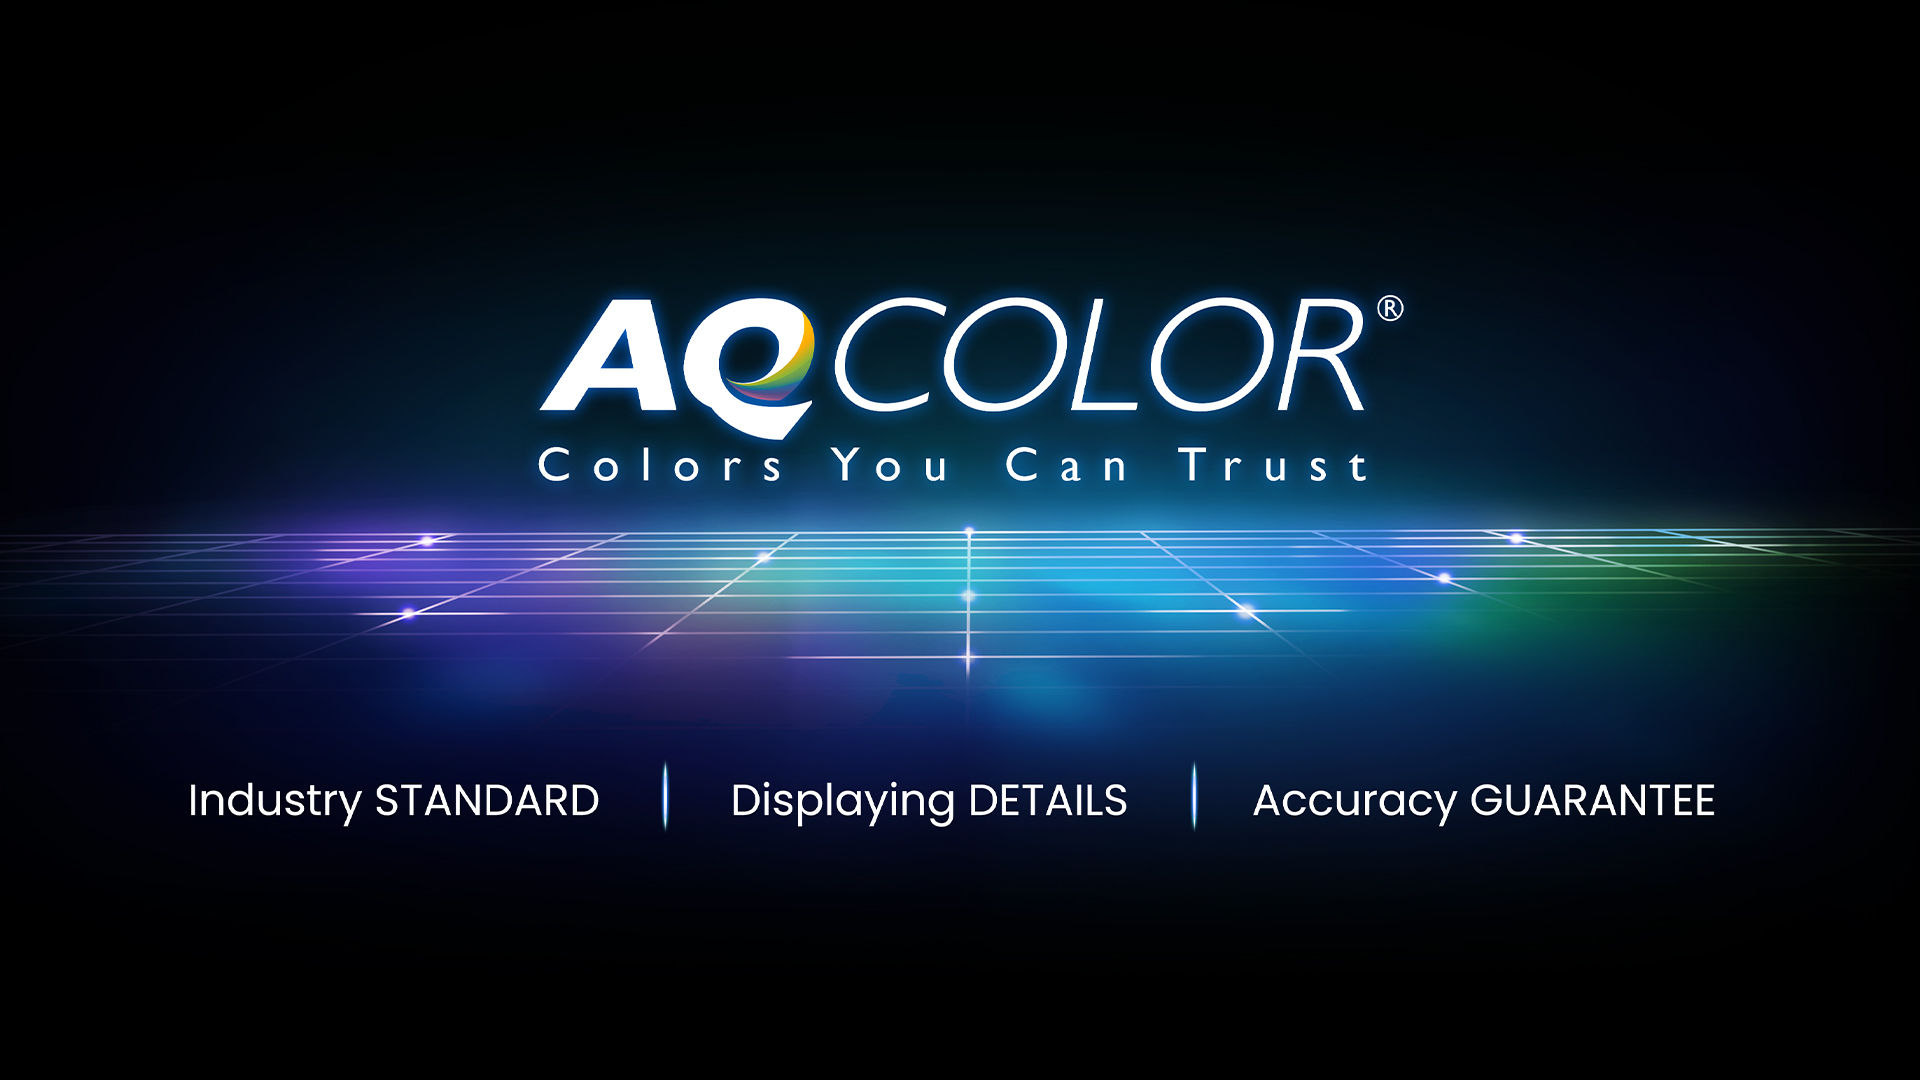 BenQ AQCOLOR technologie levert nauwkeurige reproductie. Dit vertaalt zich in de weergave van kleur precies zoals het bedoeld is. 